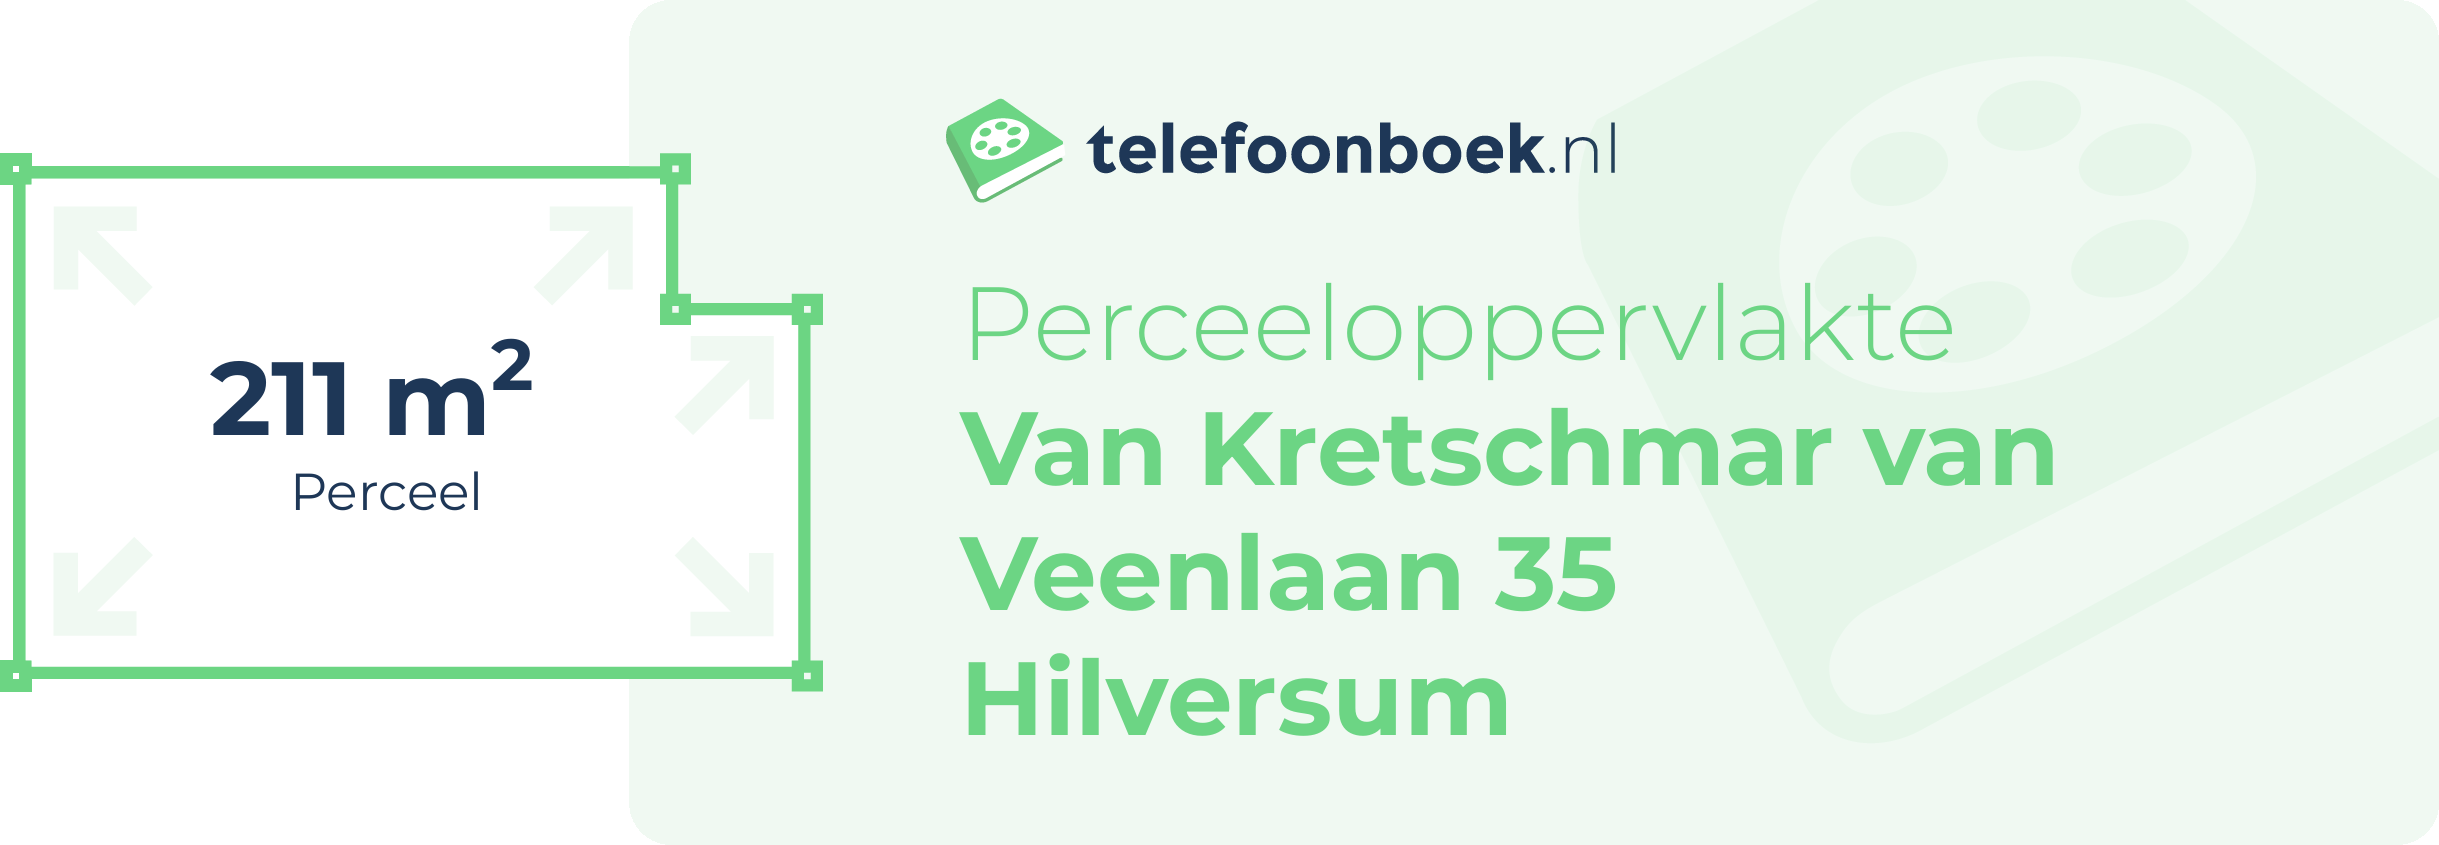 Perceeloppervlakte Van Kretschmar Van Veenlaan 35 Hilversum